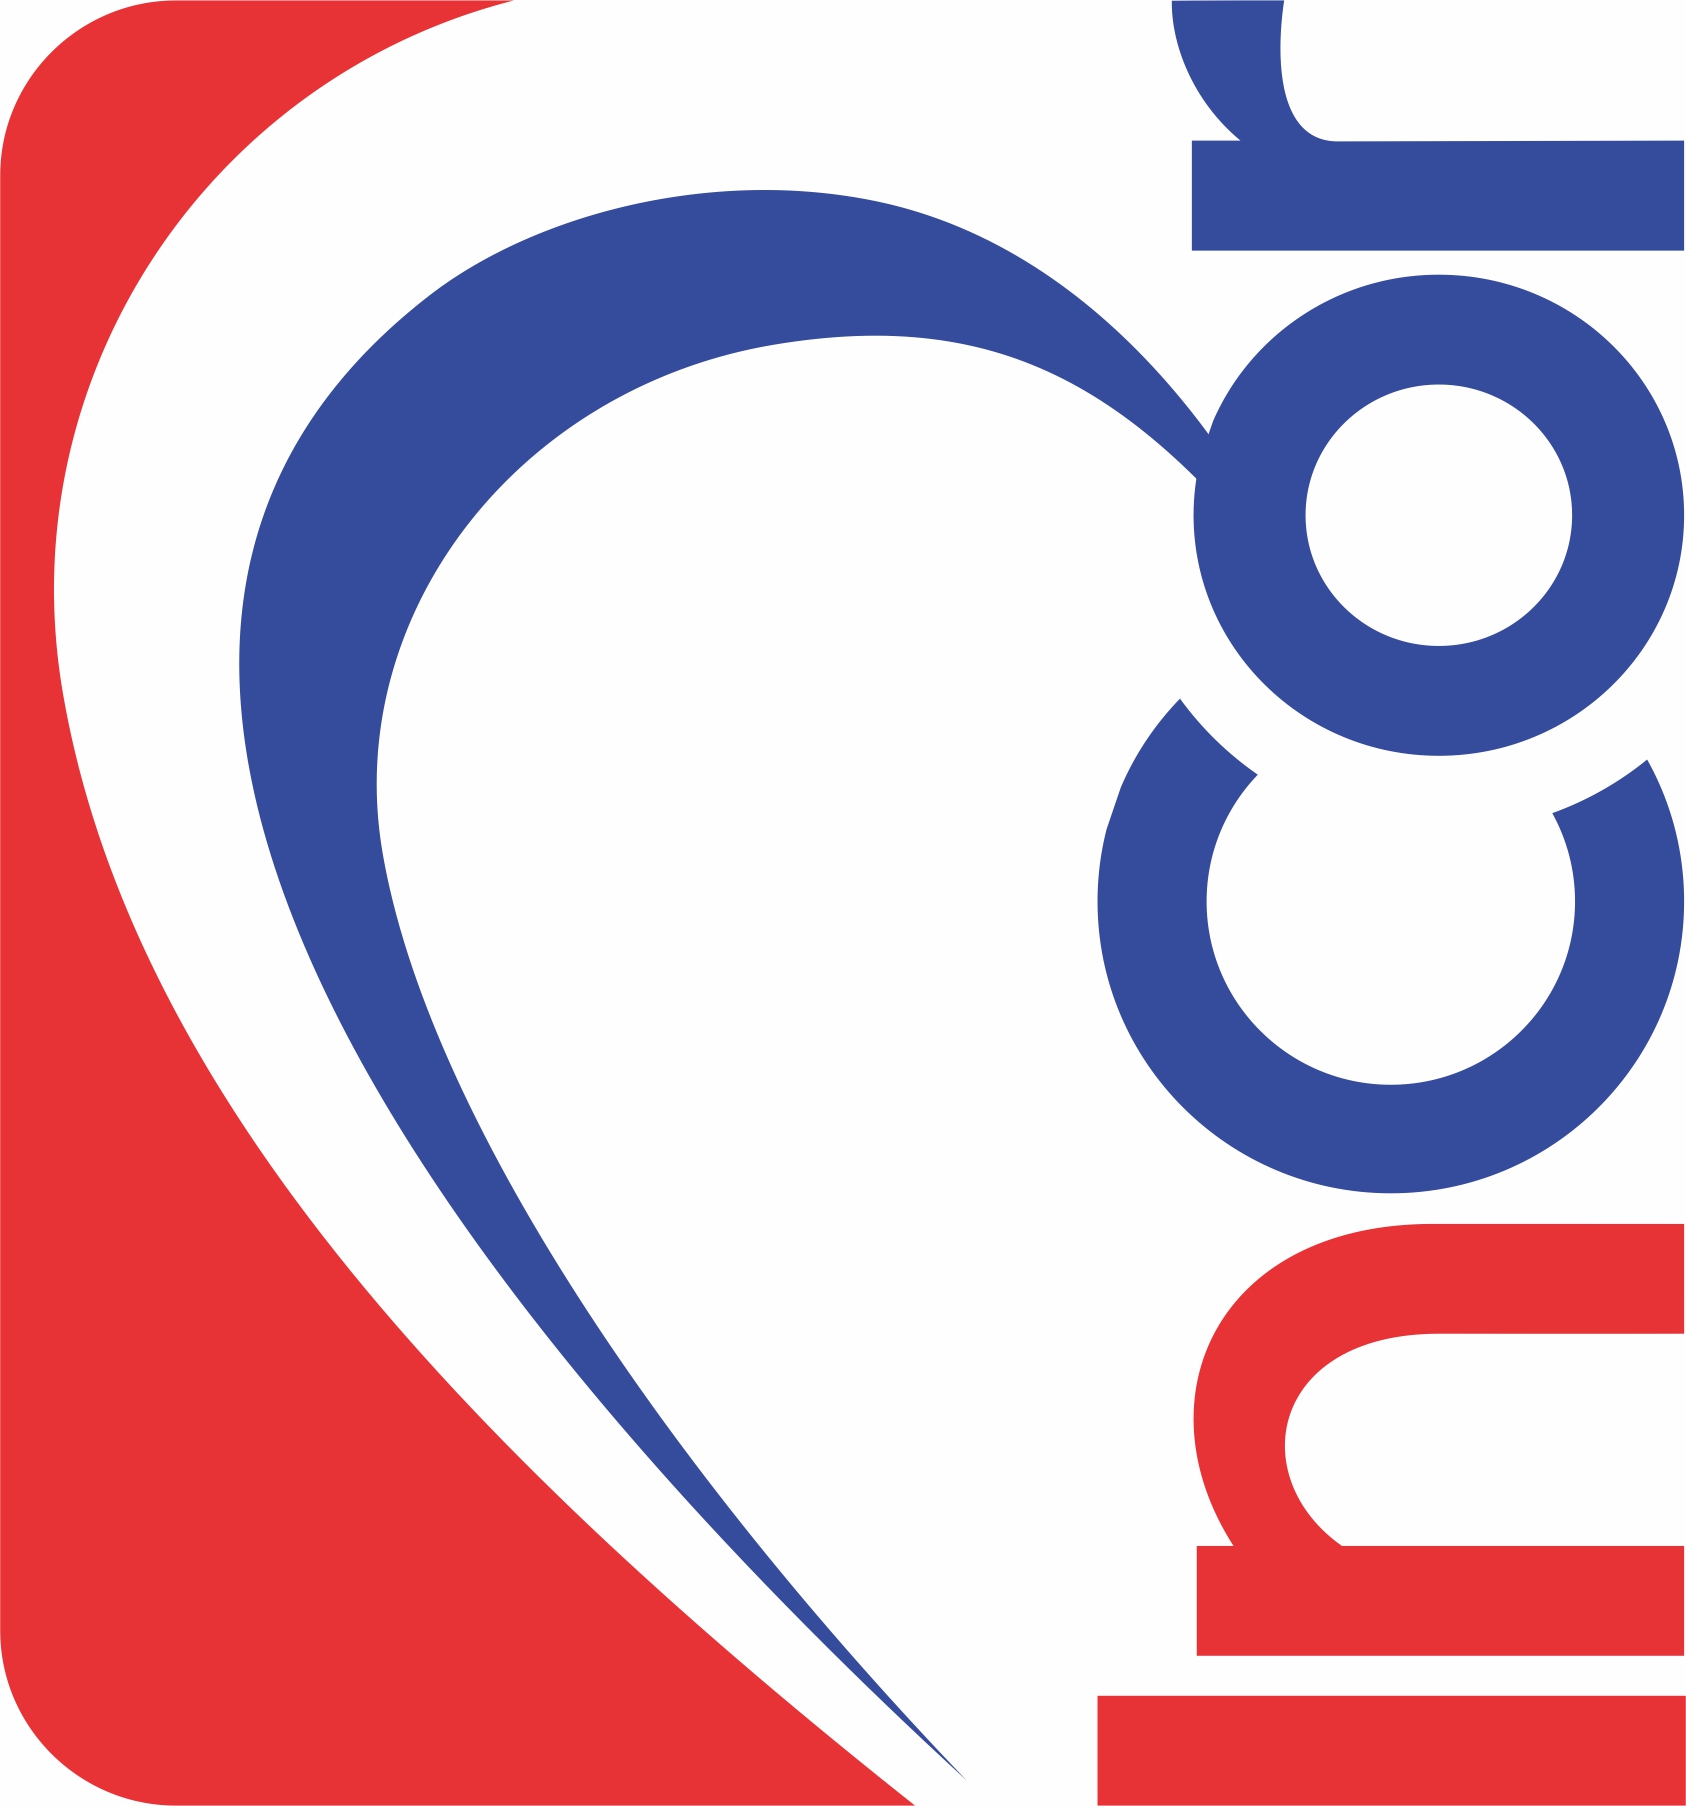 Instituto de doenças do Coração (INCOR)